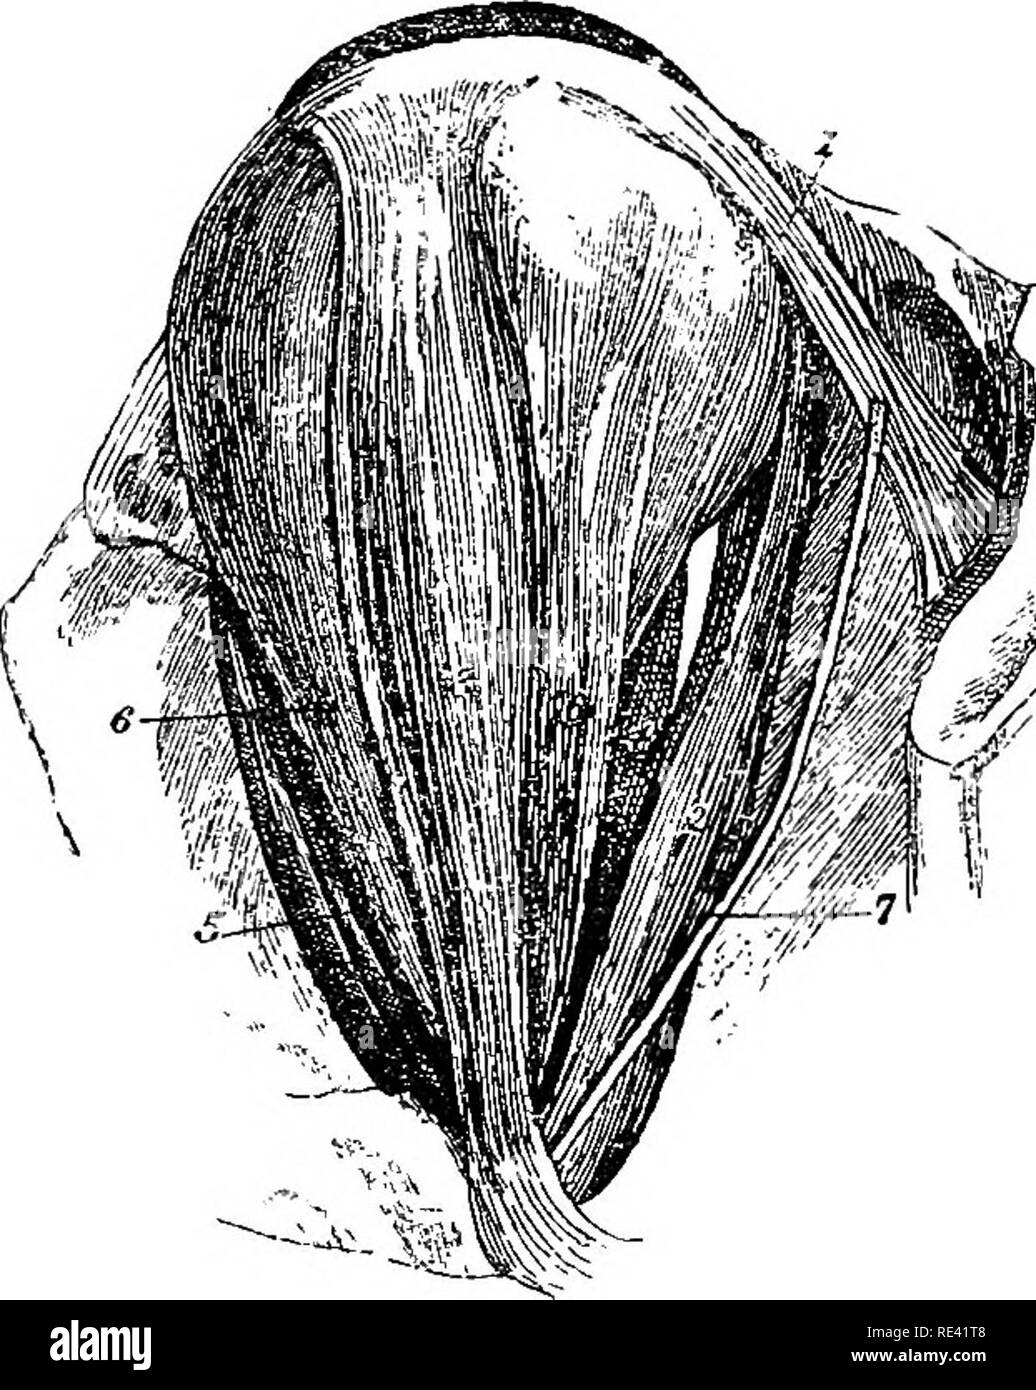 . L'anatomia del cavallo, una dissezione guida. I cavalli. 210 L'ANATOMIA DEL CAVALLO. nervo ottico. In fomi è a forma di imbuto, formando una sorta di guaina t il nervo ottico; ma spesso è suddiviso in quattro distinte fascicul. Fig. 23. Muscoli del bulbo oculare. 1. Obliquo inferiore ; 2. Rectus inferiore ; 3. Rectus esterno ; 4. Rectus interno ; 5. Superior rectus 6, 6. Il riavvolgitore ; 7. I nervi di obliquo inferiore. uno giacente al di sotto di ciascuno dei retti. La sua origine è il margine c il forame ottico ed è inserita nella sclerotica. Il superiore obliqua, o Trochleaeis, ha una notevole dis Foto Stock